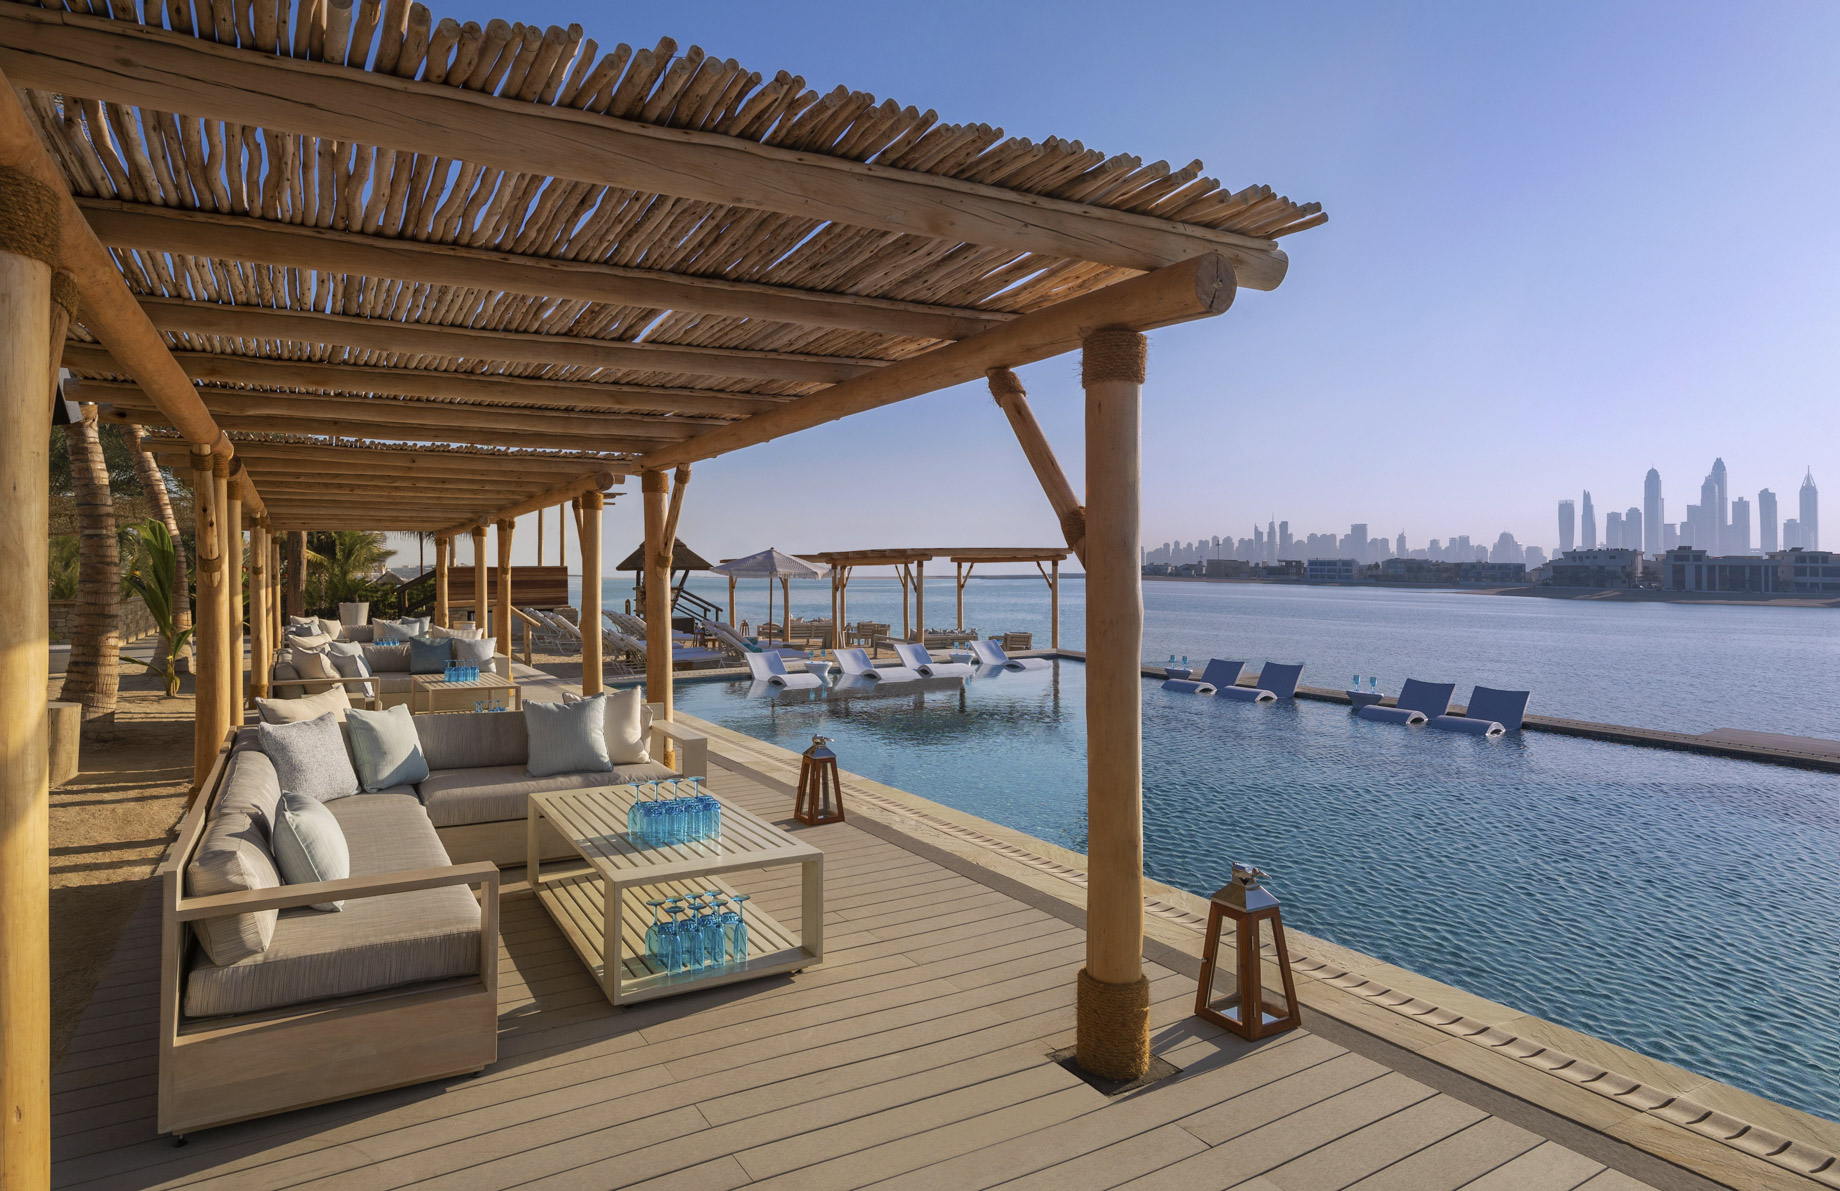 Atlantis The Palm Resort – Crescent Rd, Dubai, UAE – White Beach Club Pool